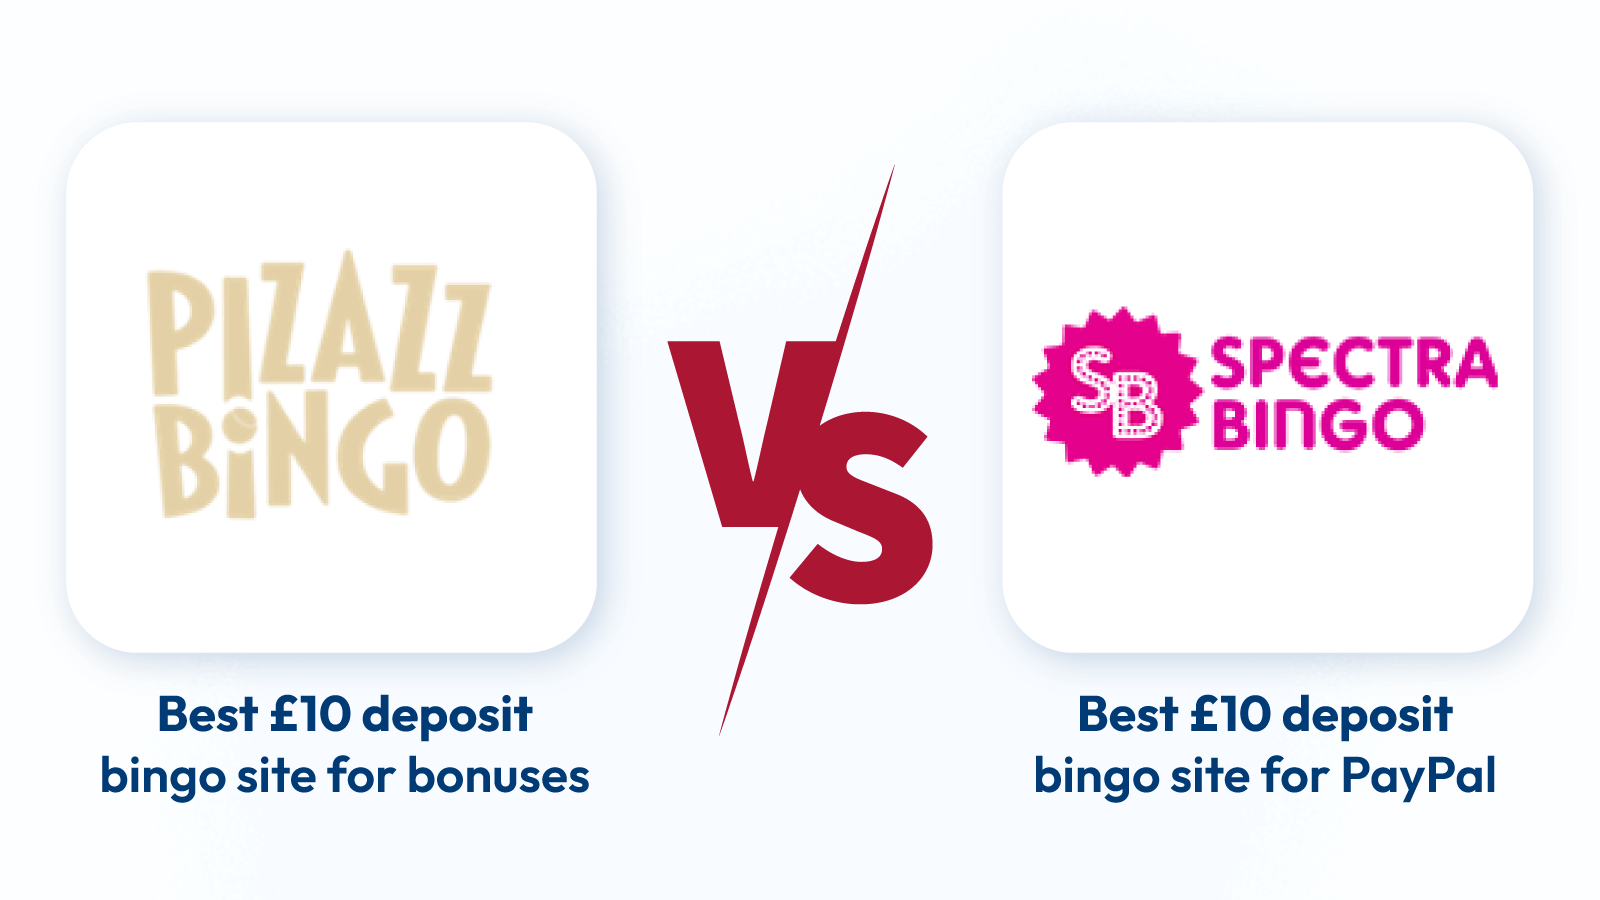 Best ¥10 Deposit Bingo Site UK Pizazz Bingo vs Spectra Bingo